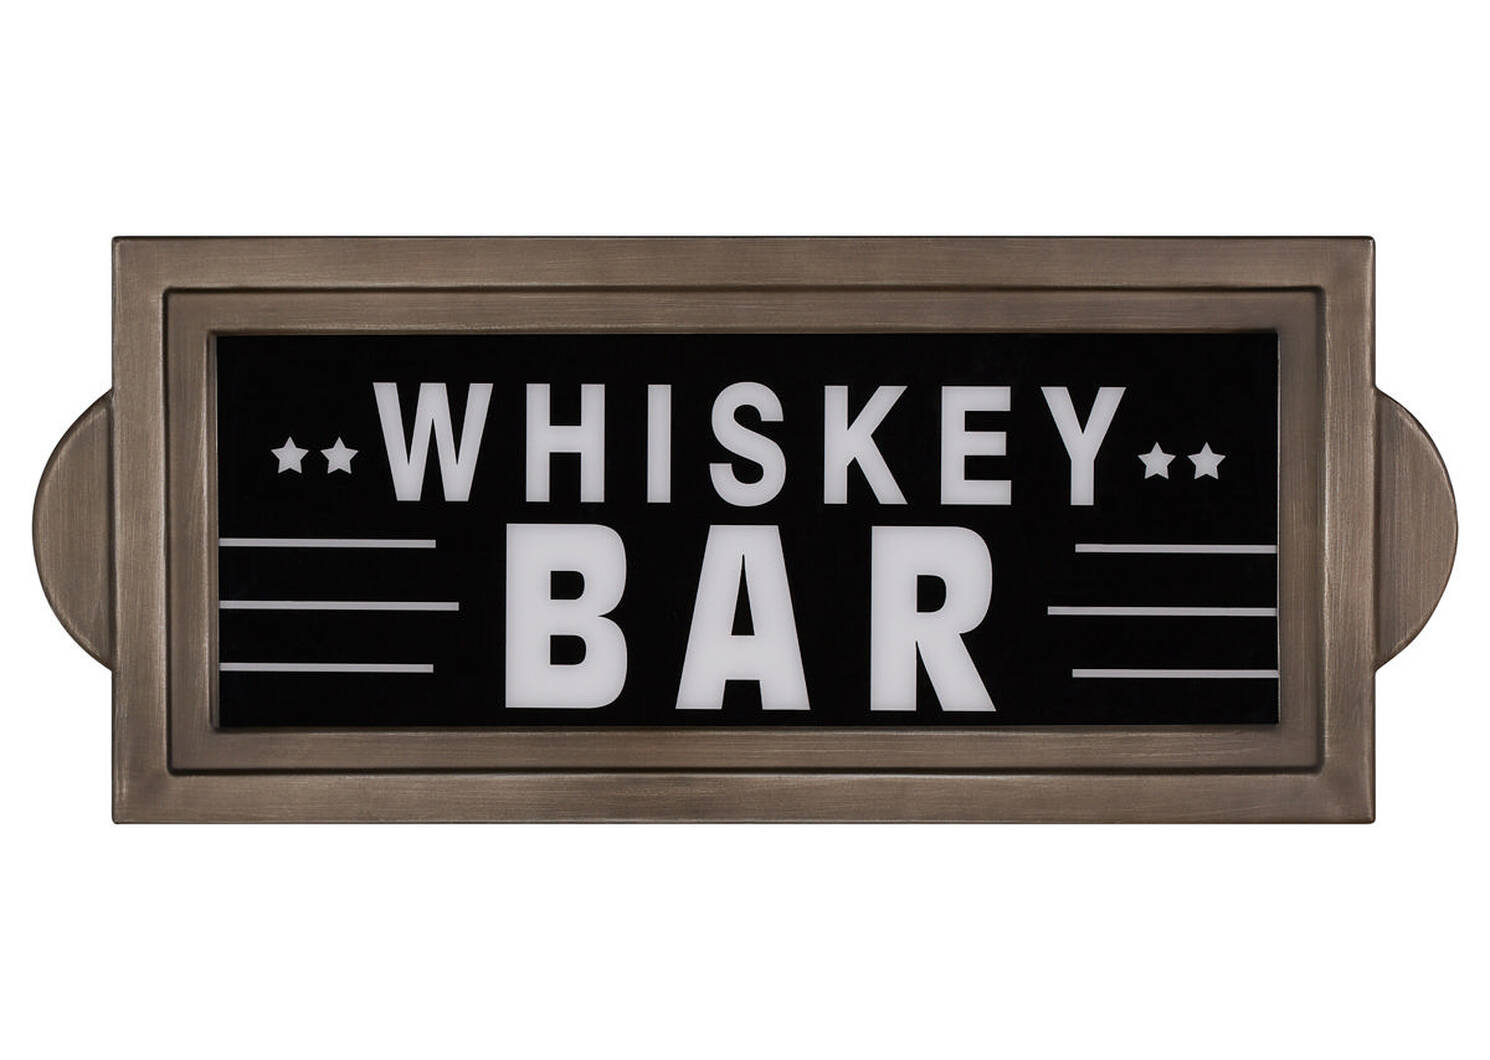 Whiskey Bar Wall Sign